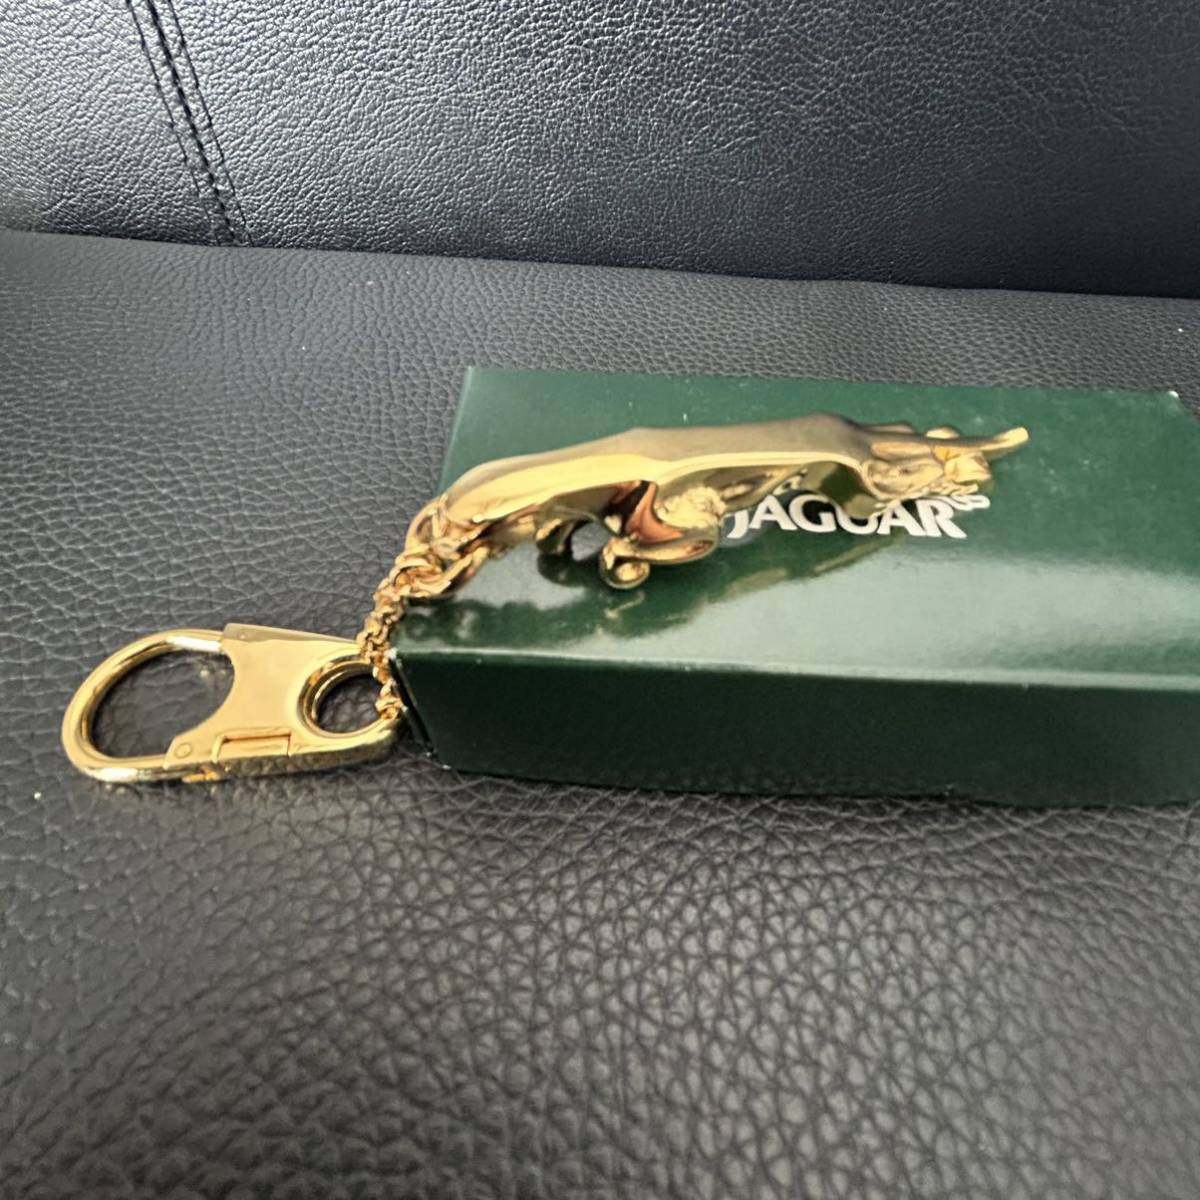  box attaching unused *JAGUAR| Jaguar original key holder key ring original Novelty not for sale * Gold 